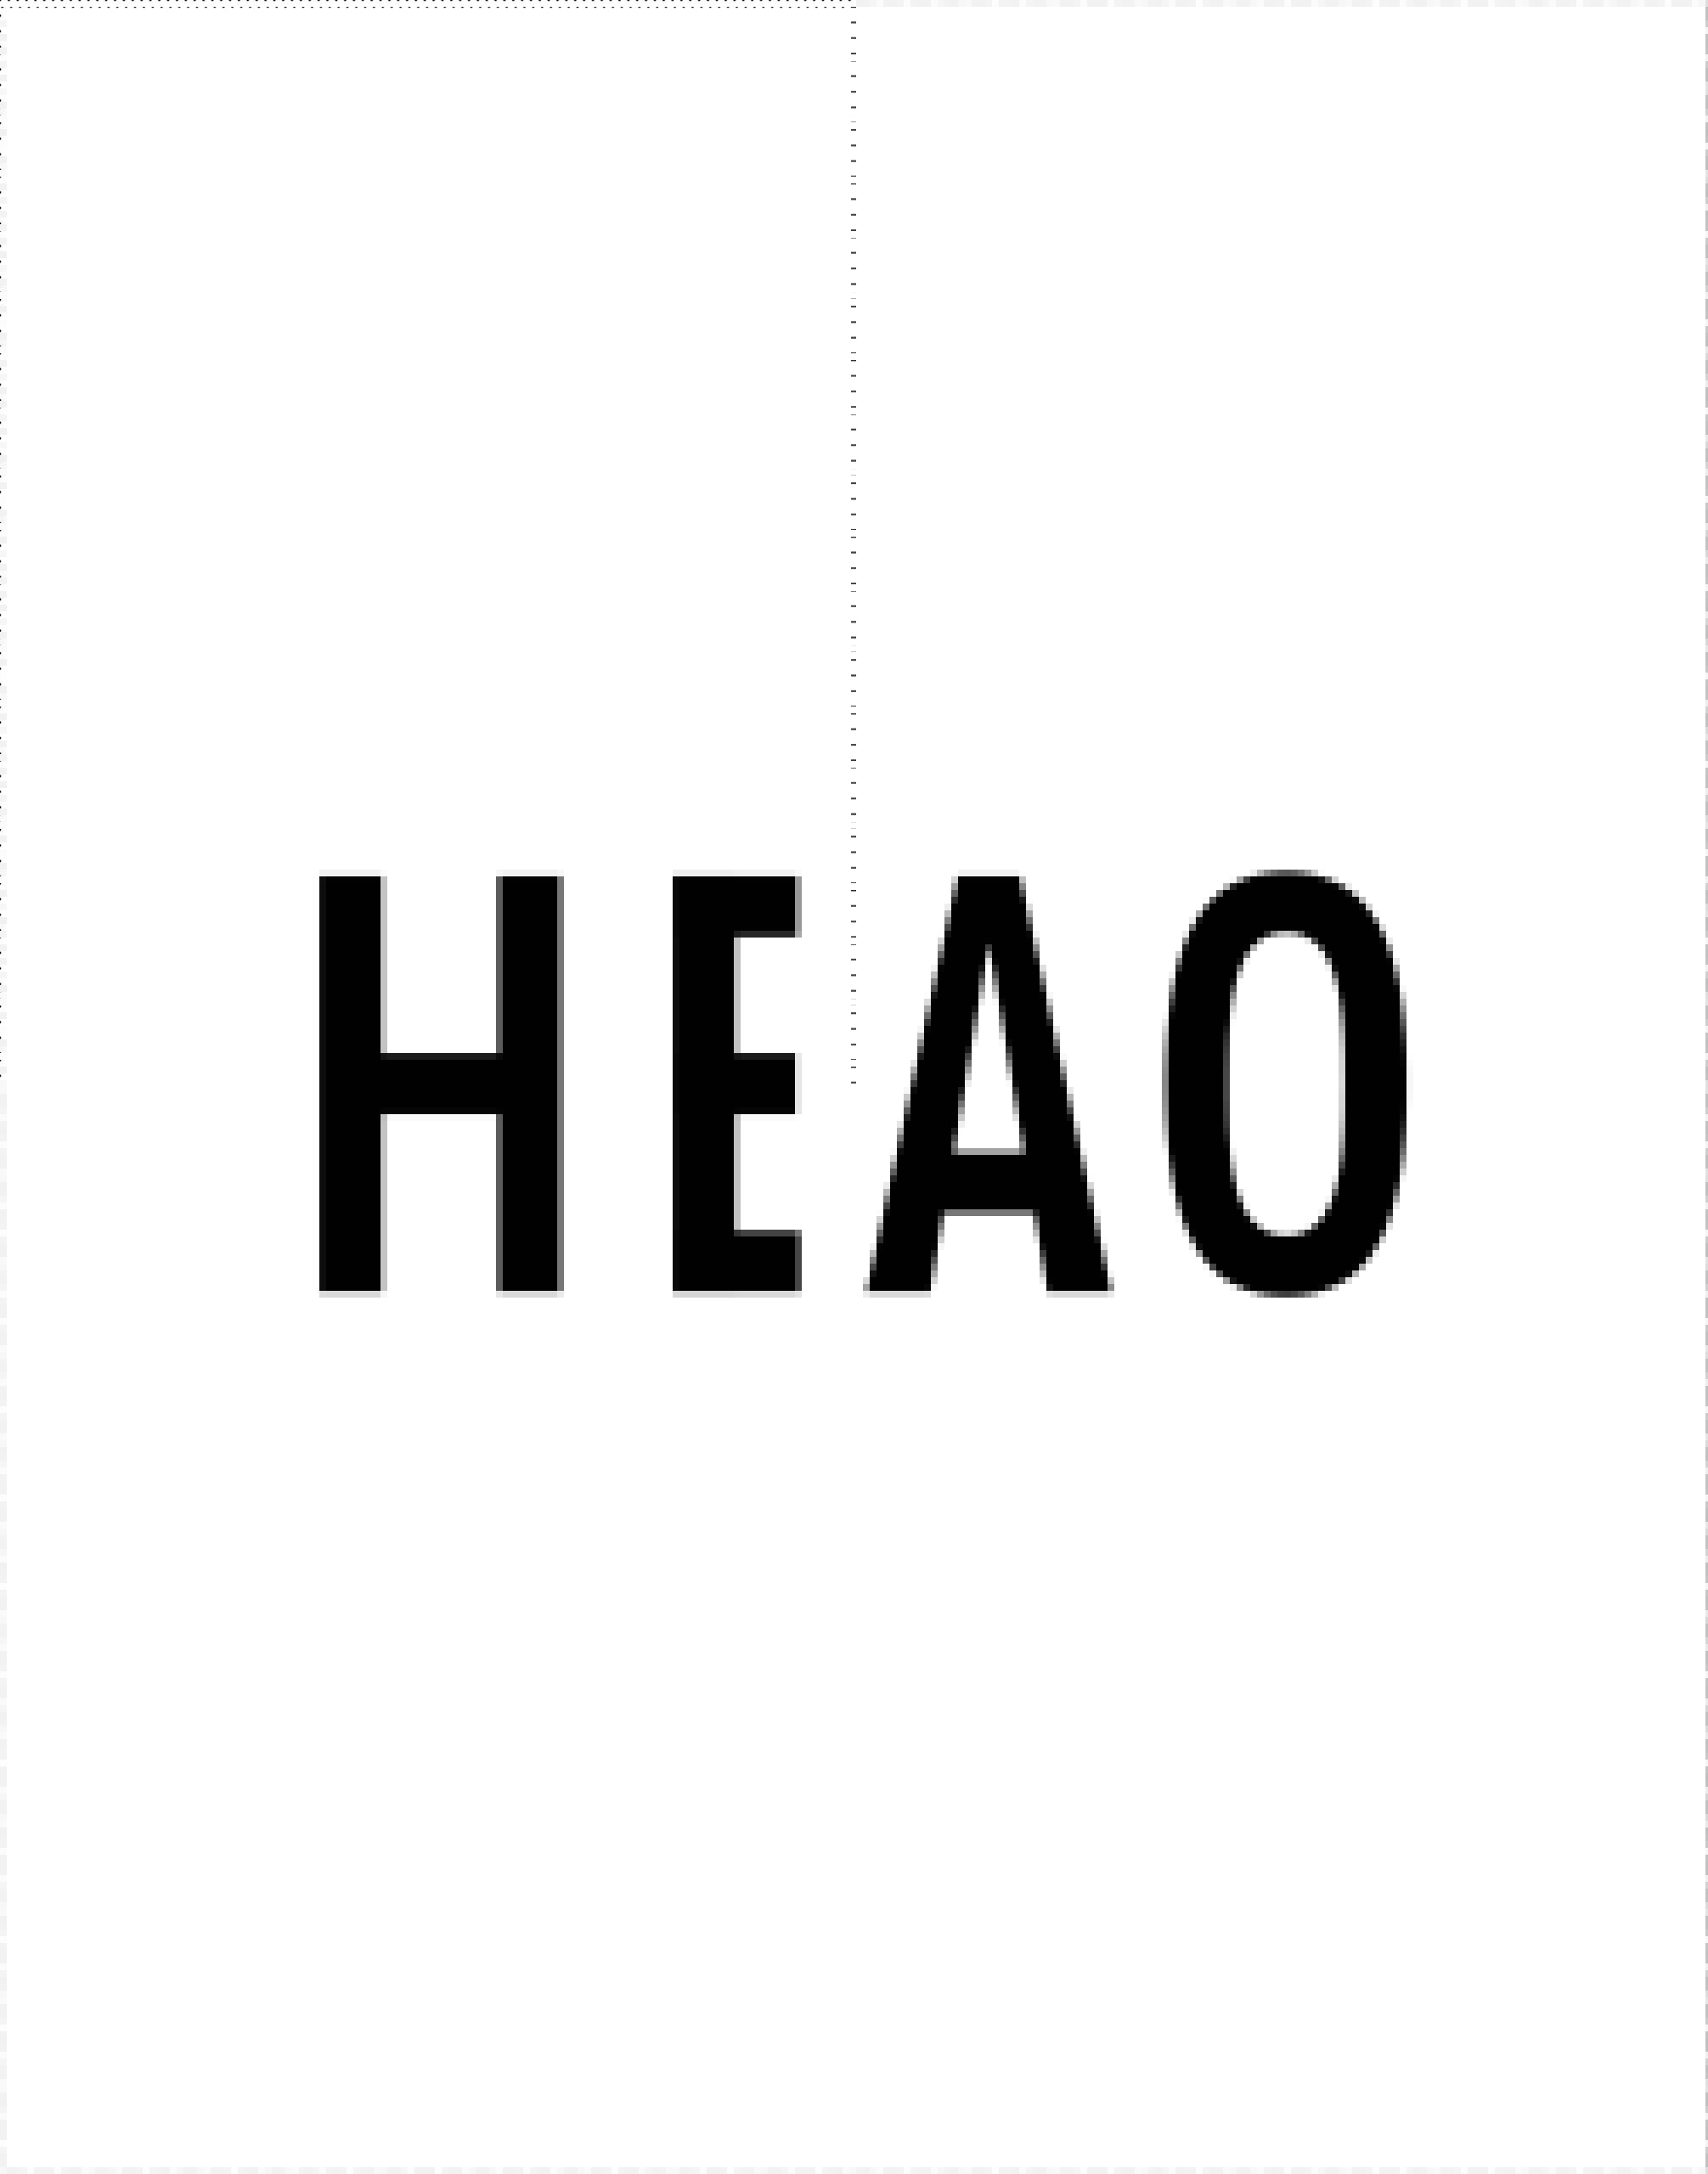 5-heao-final-page-01